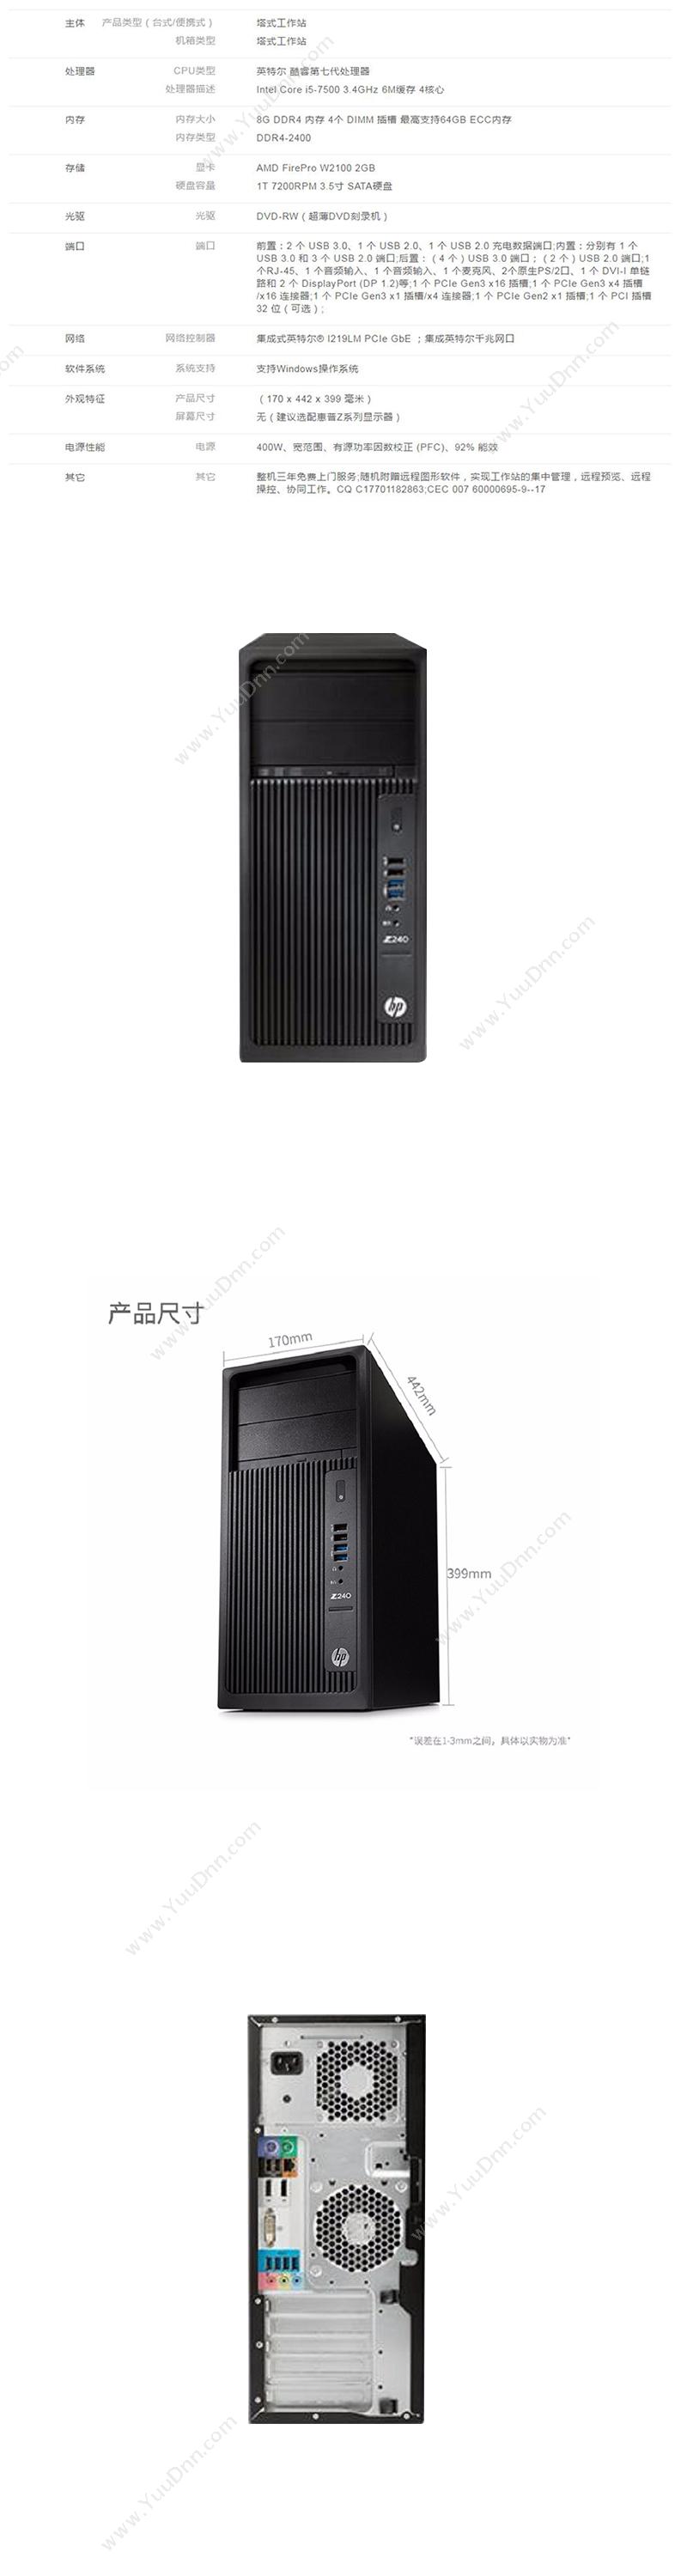 惠普 HP Z240 Tower Workstation 工作站    Intel Core i5-7500/8GB/1TB/W2100 2GB 显卡 台式工作站